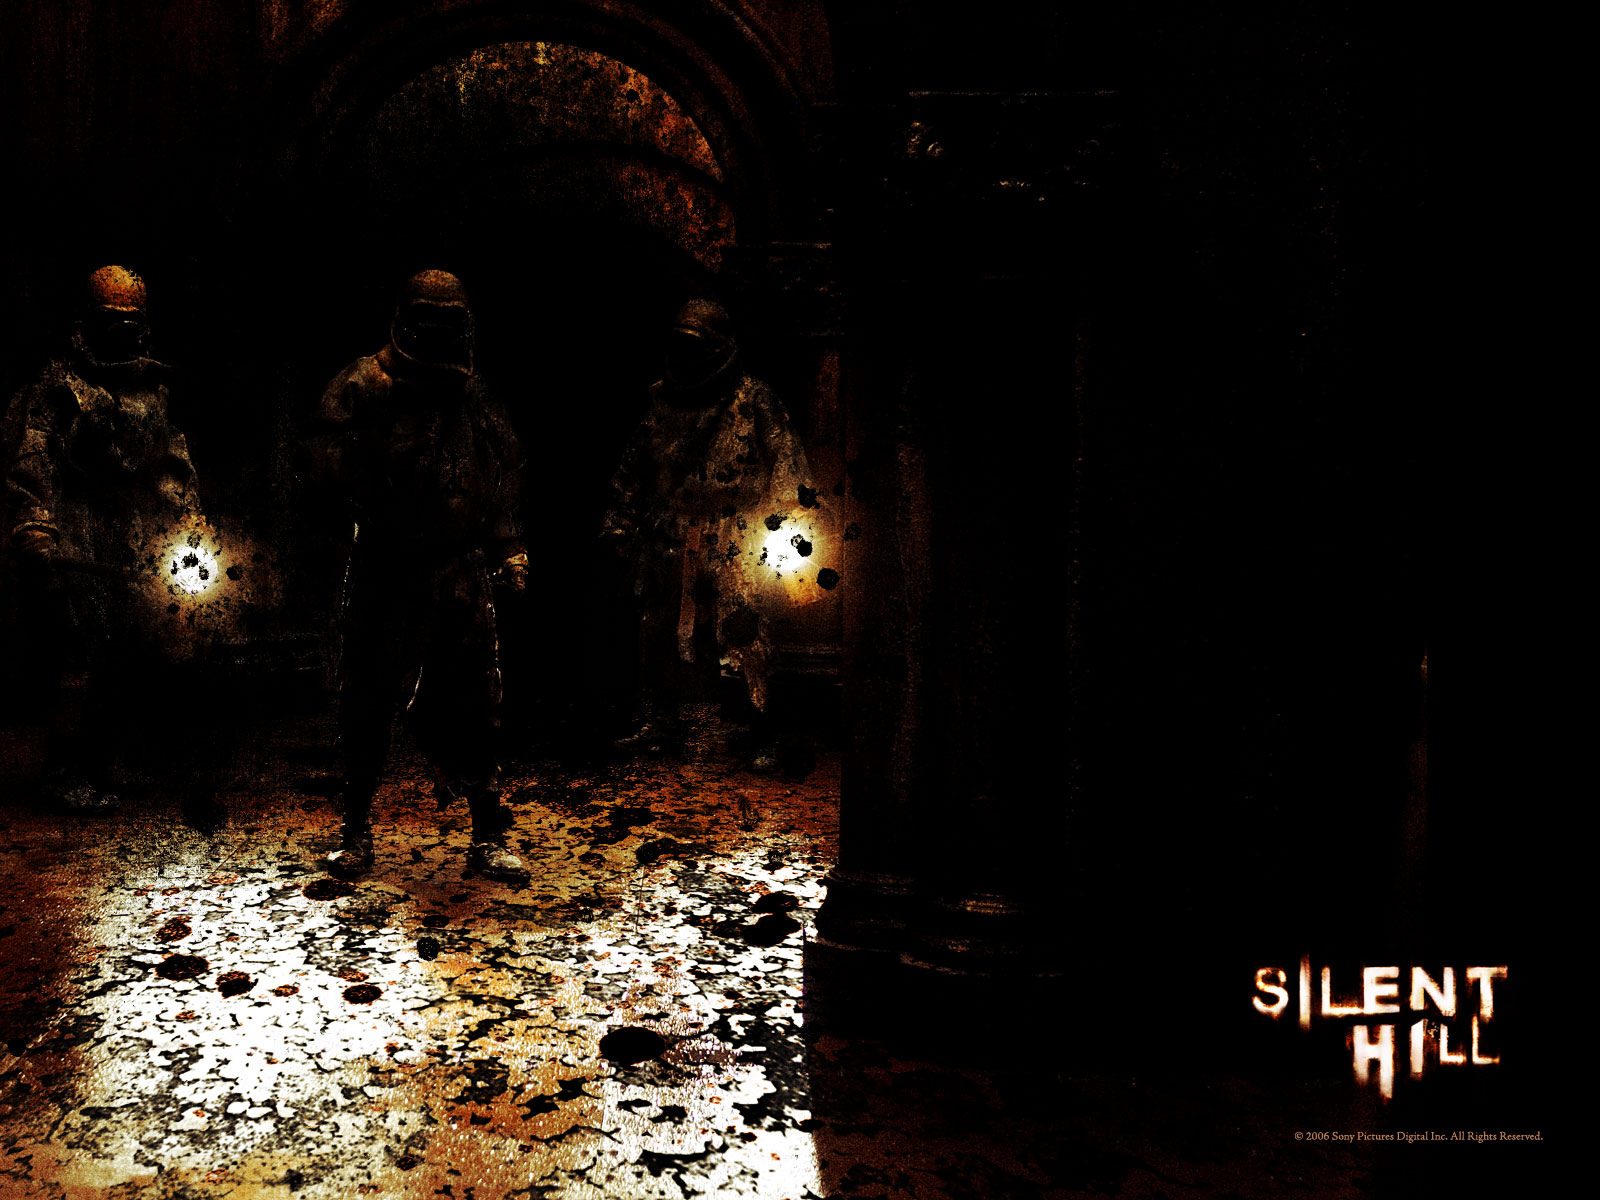 壁纸1600x1200 Movie wallpaper Silent Hill 2006 寂静岭 电影壁纸壁纸 恐怖电影《寂静岭 Silent Hill》壁纸 恐怖电影《寂静岭 Silent Hill》图片 恐怖电影《寂静岭 Silent Hill》素材 影视壁纸 影视图库 影视图片素材桌面壁纸